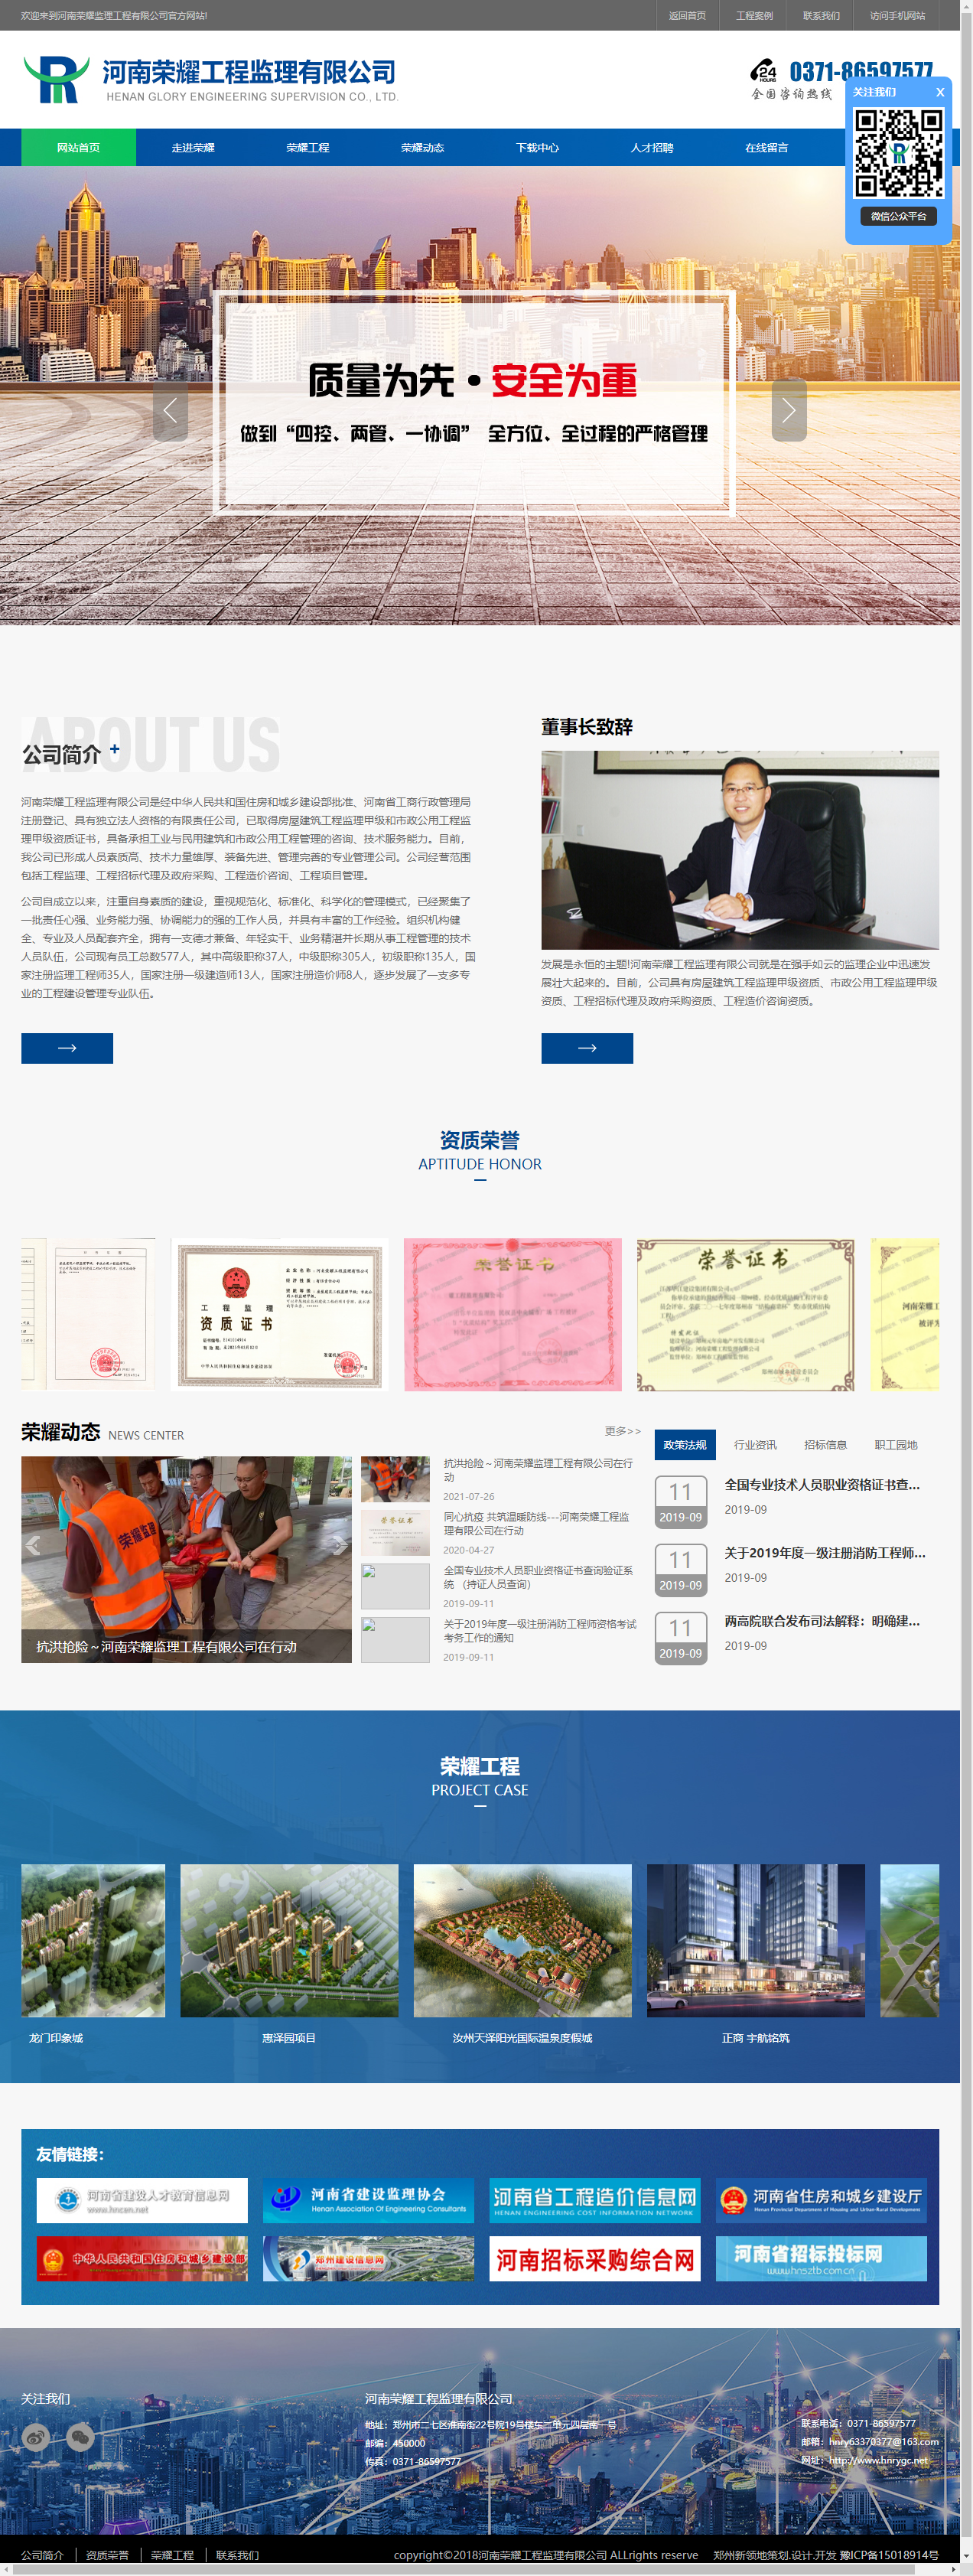 河南荣耀工程监理有限公司网站案例